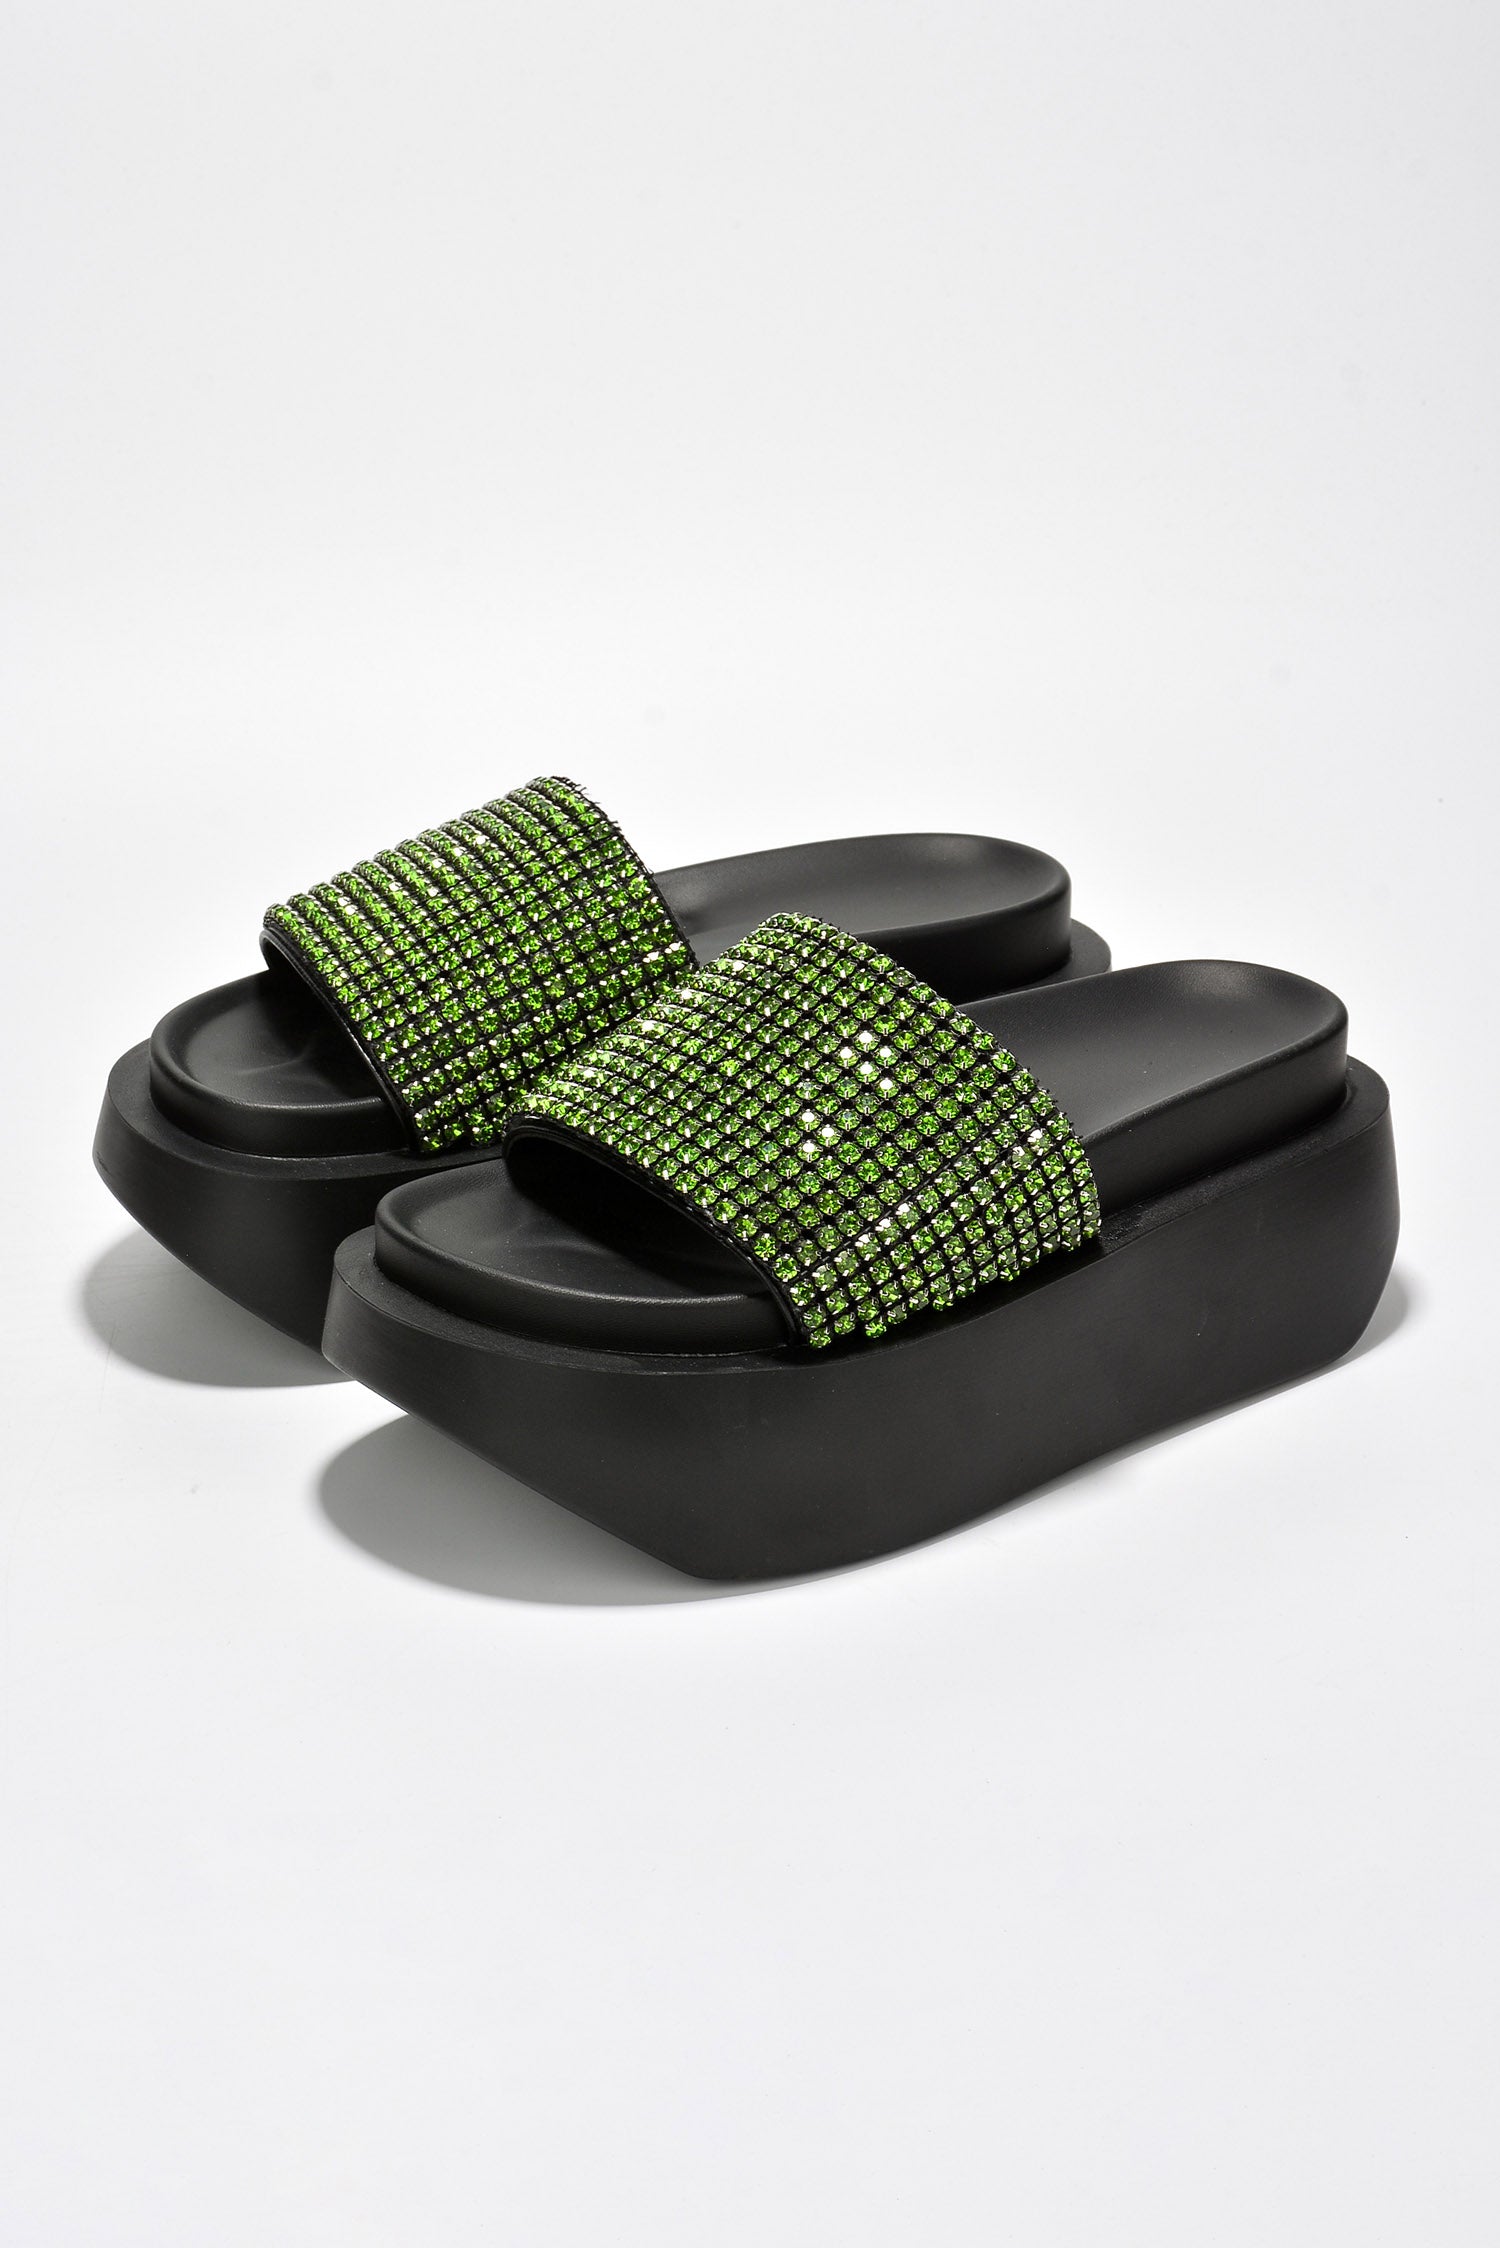 UrbanOG - Bisbee Luxurious Rhinestone Platform Sandals - SANDALS